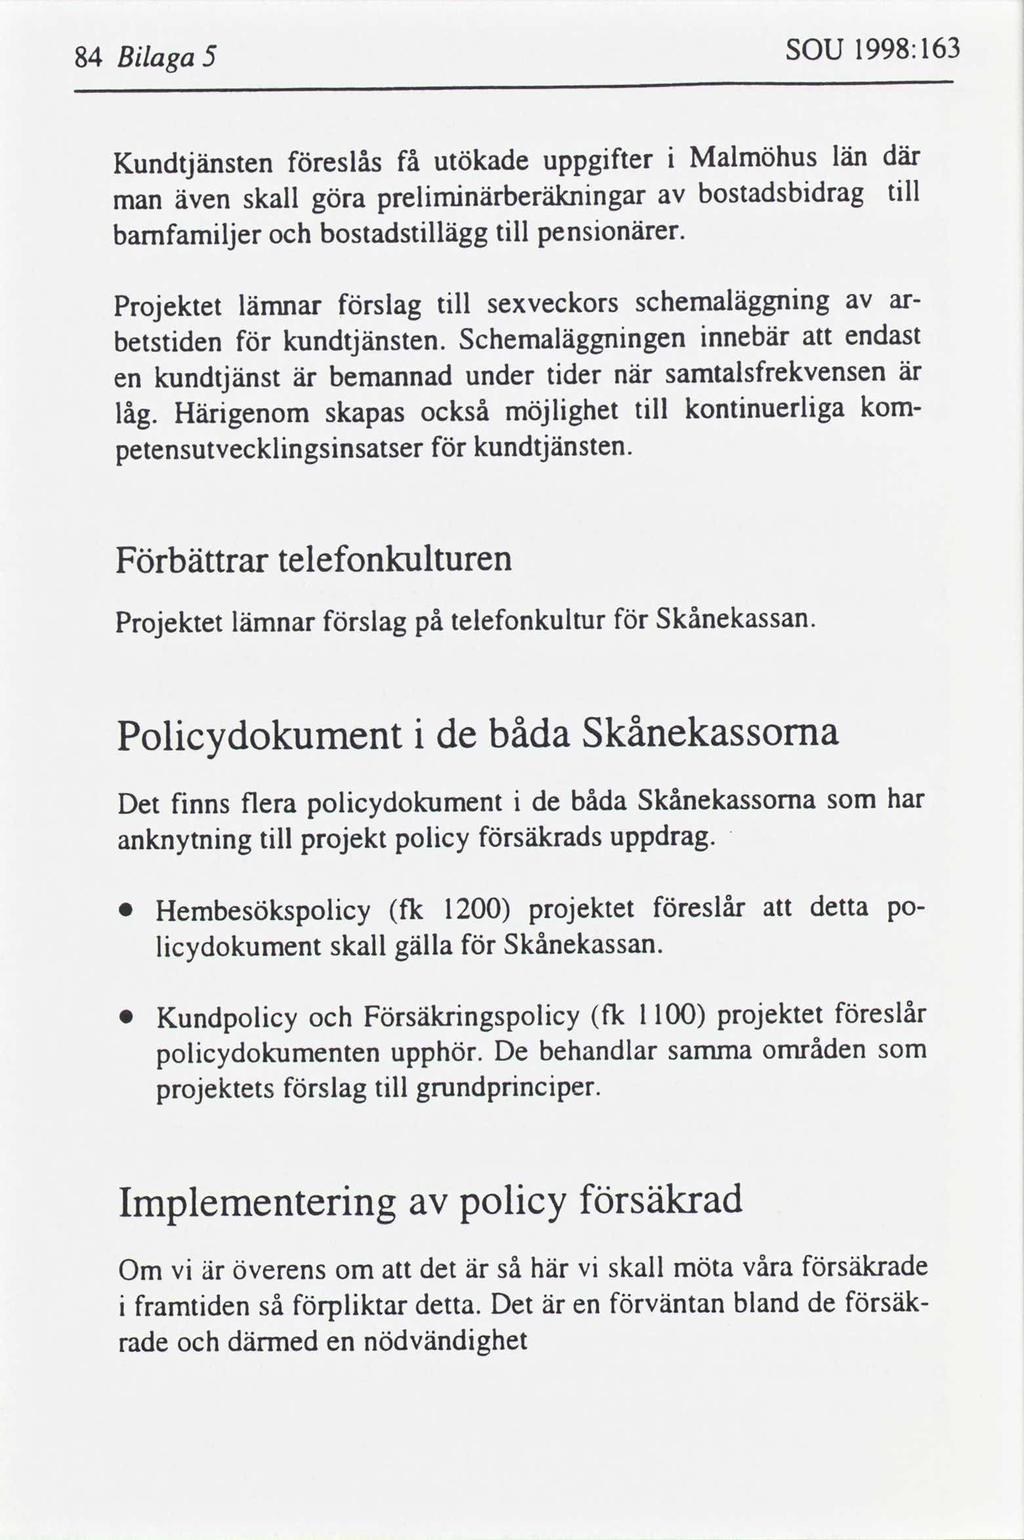 1998:163 SOU 5 Blaga 84 där Malmöhus län uppgfter få utökade eslås Kundtjänsten tll bostadsbdrag prelmnärberälcnngar skall göra även man tll pensonärer.